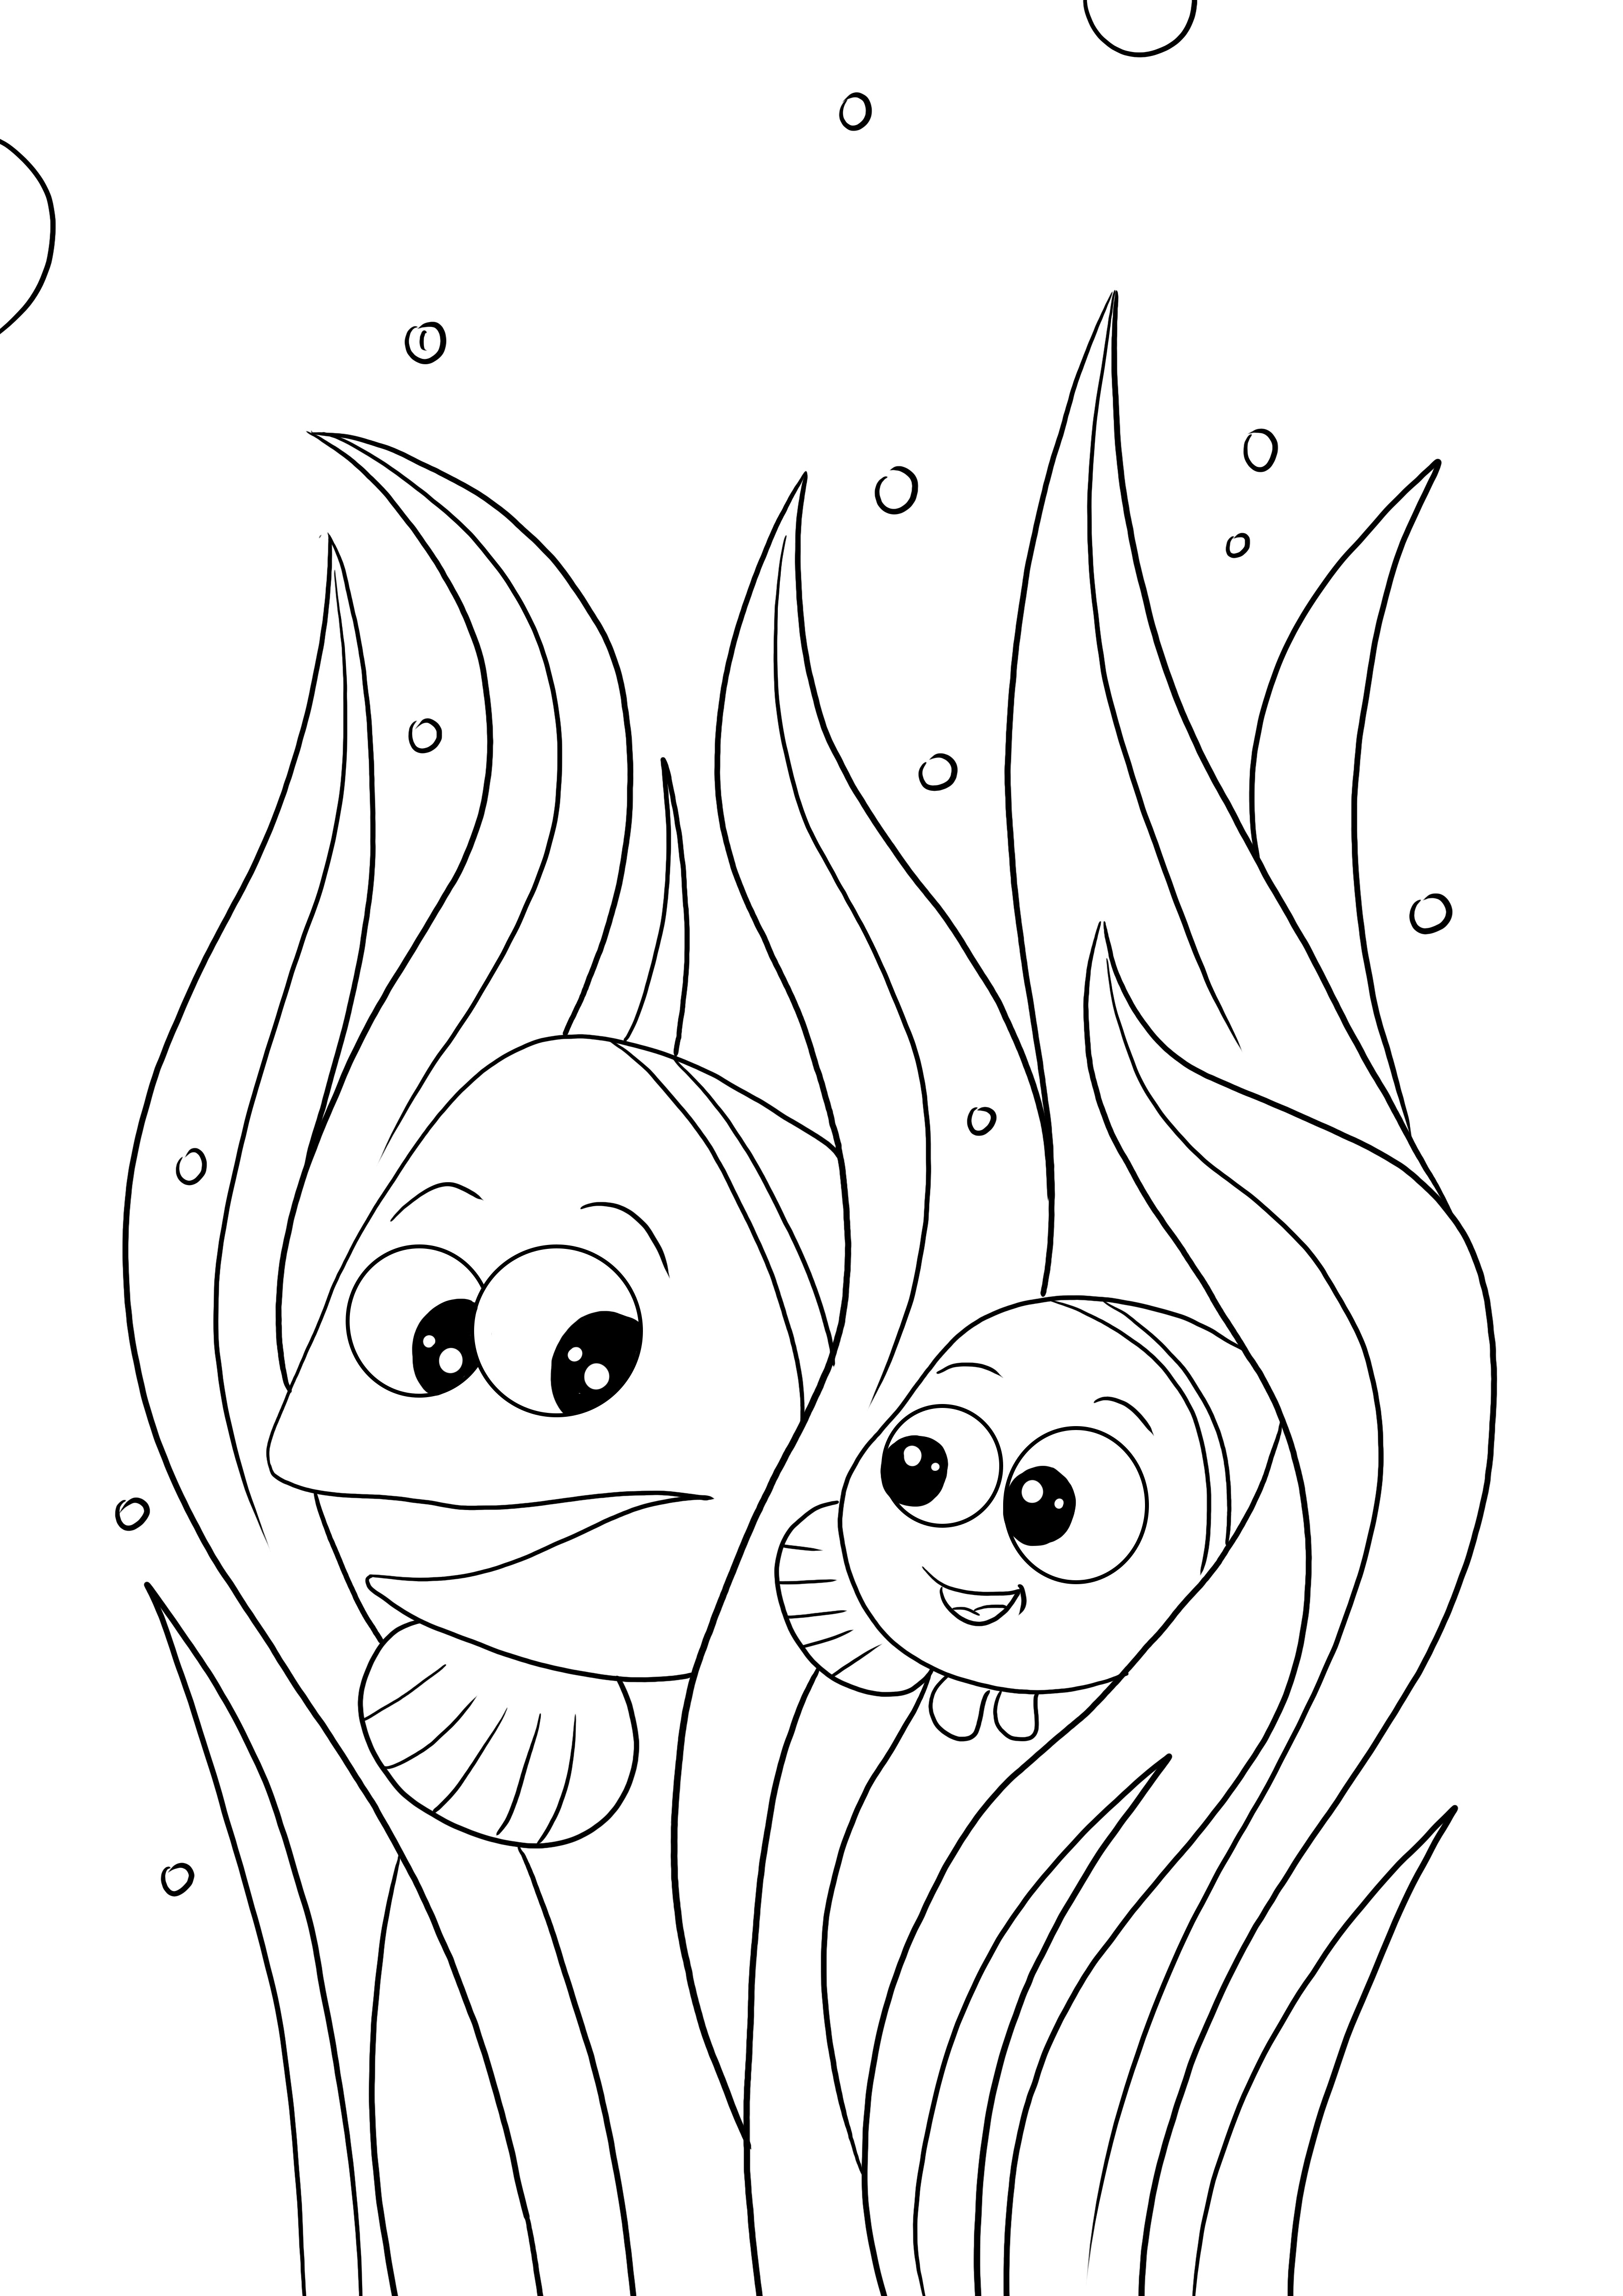 Marlin ve Nemo her yaştan çocuklar için ücretsiz boyama ve baskı sayfası